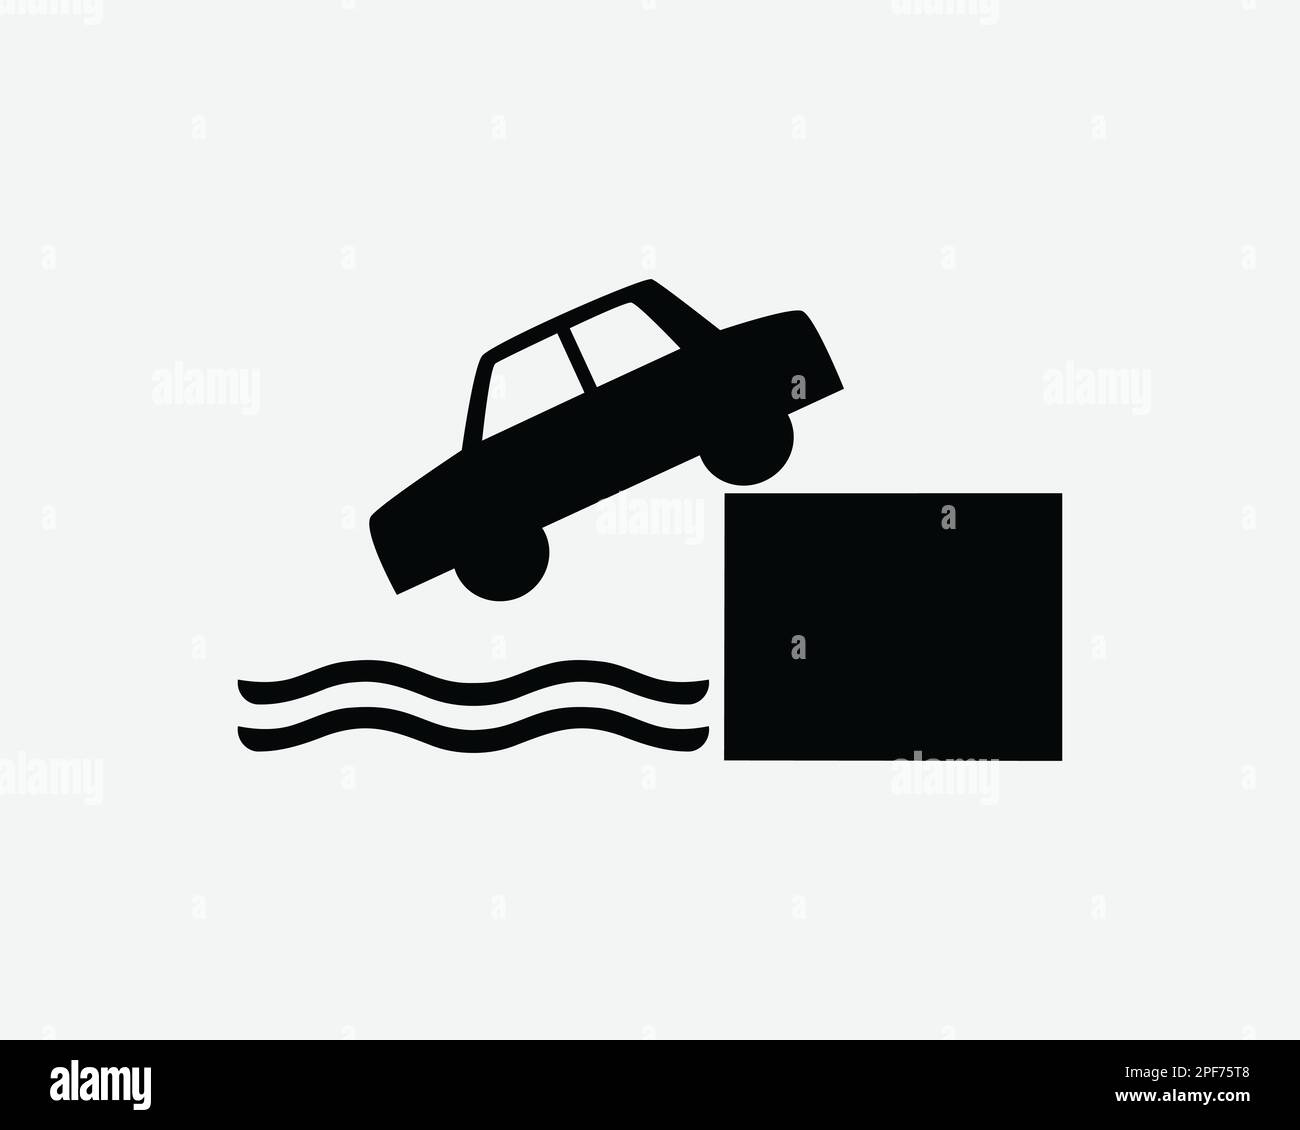 Auto Drive Off Cliff icona veicolo caduta in acqua Sea Vector Black White Silhouette simbolo segno grafico clipart illustrazione pittogramma Illustrazione Vettoriale